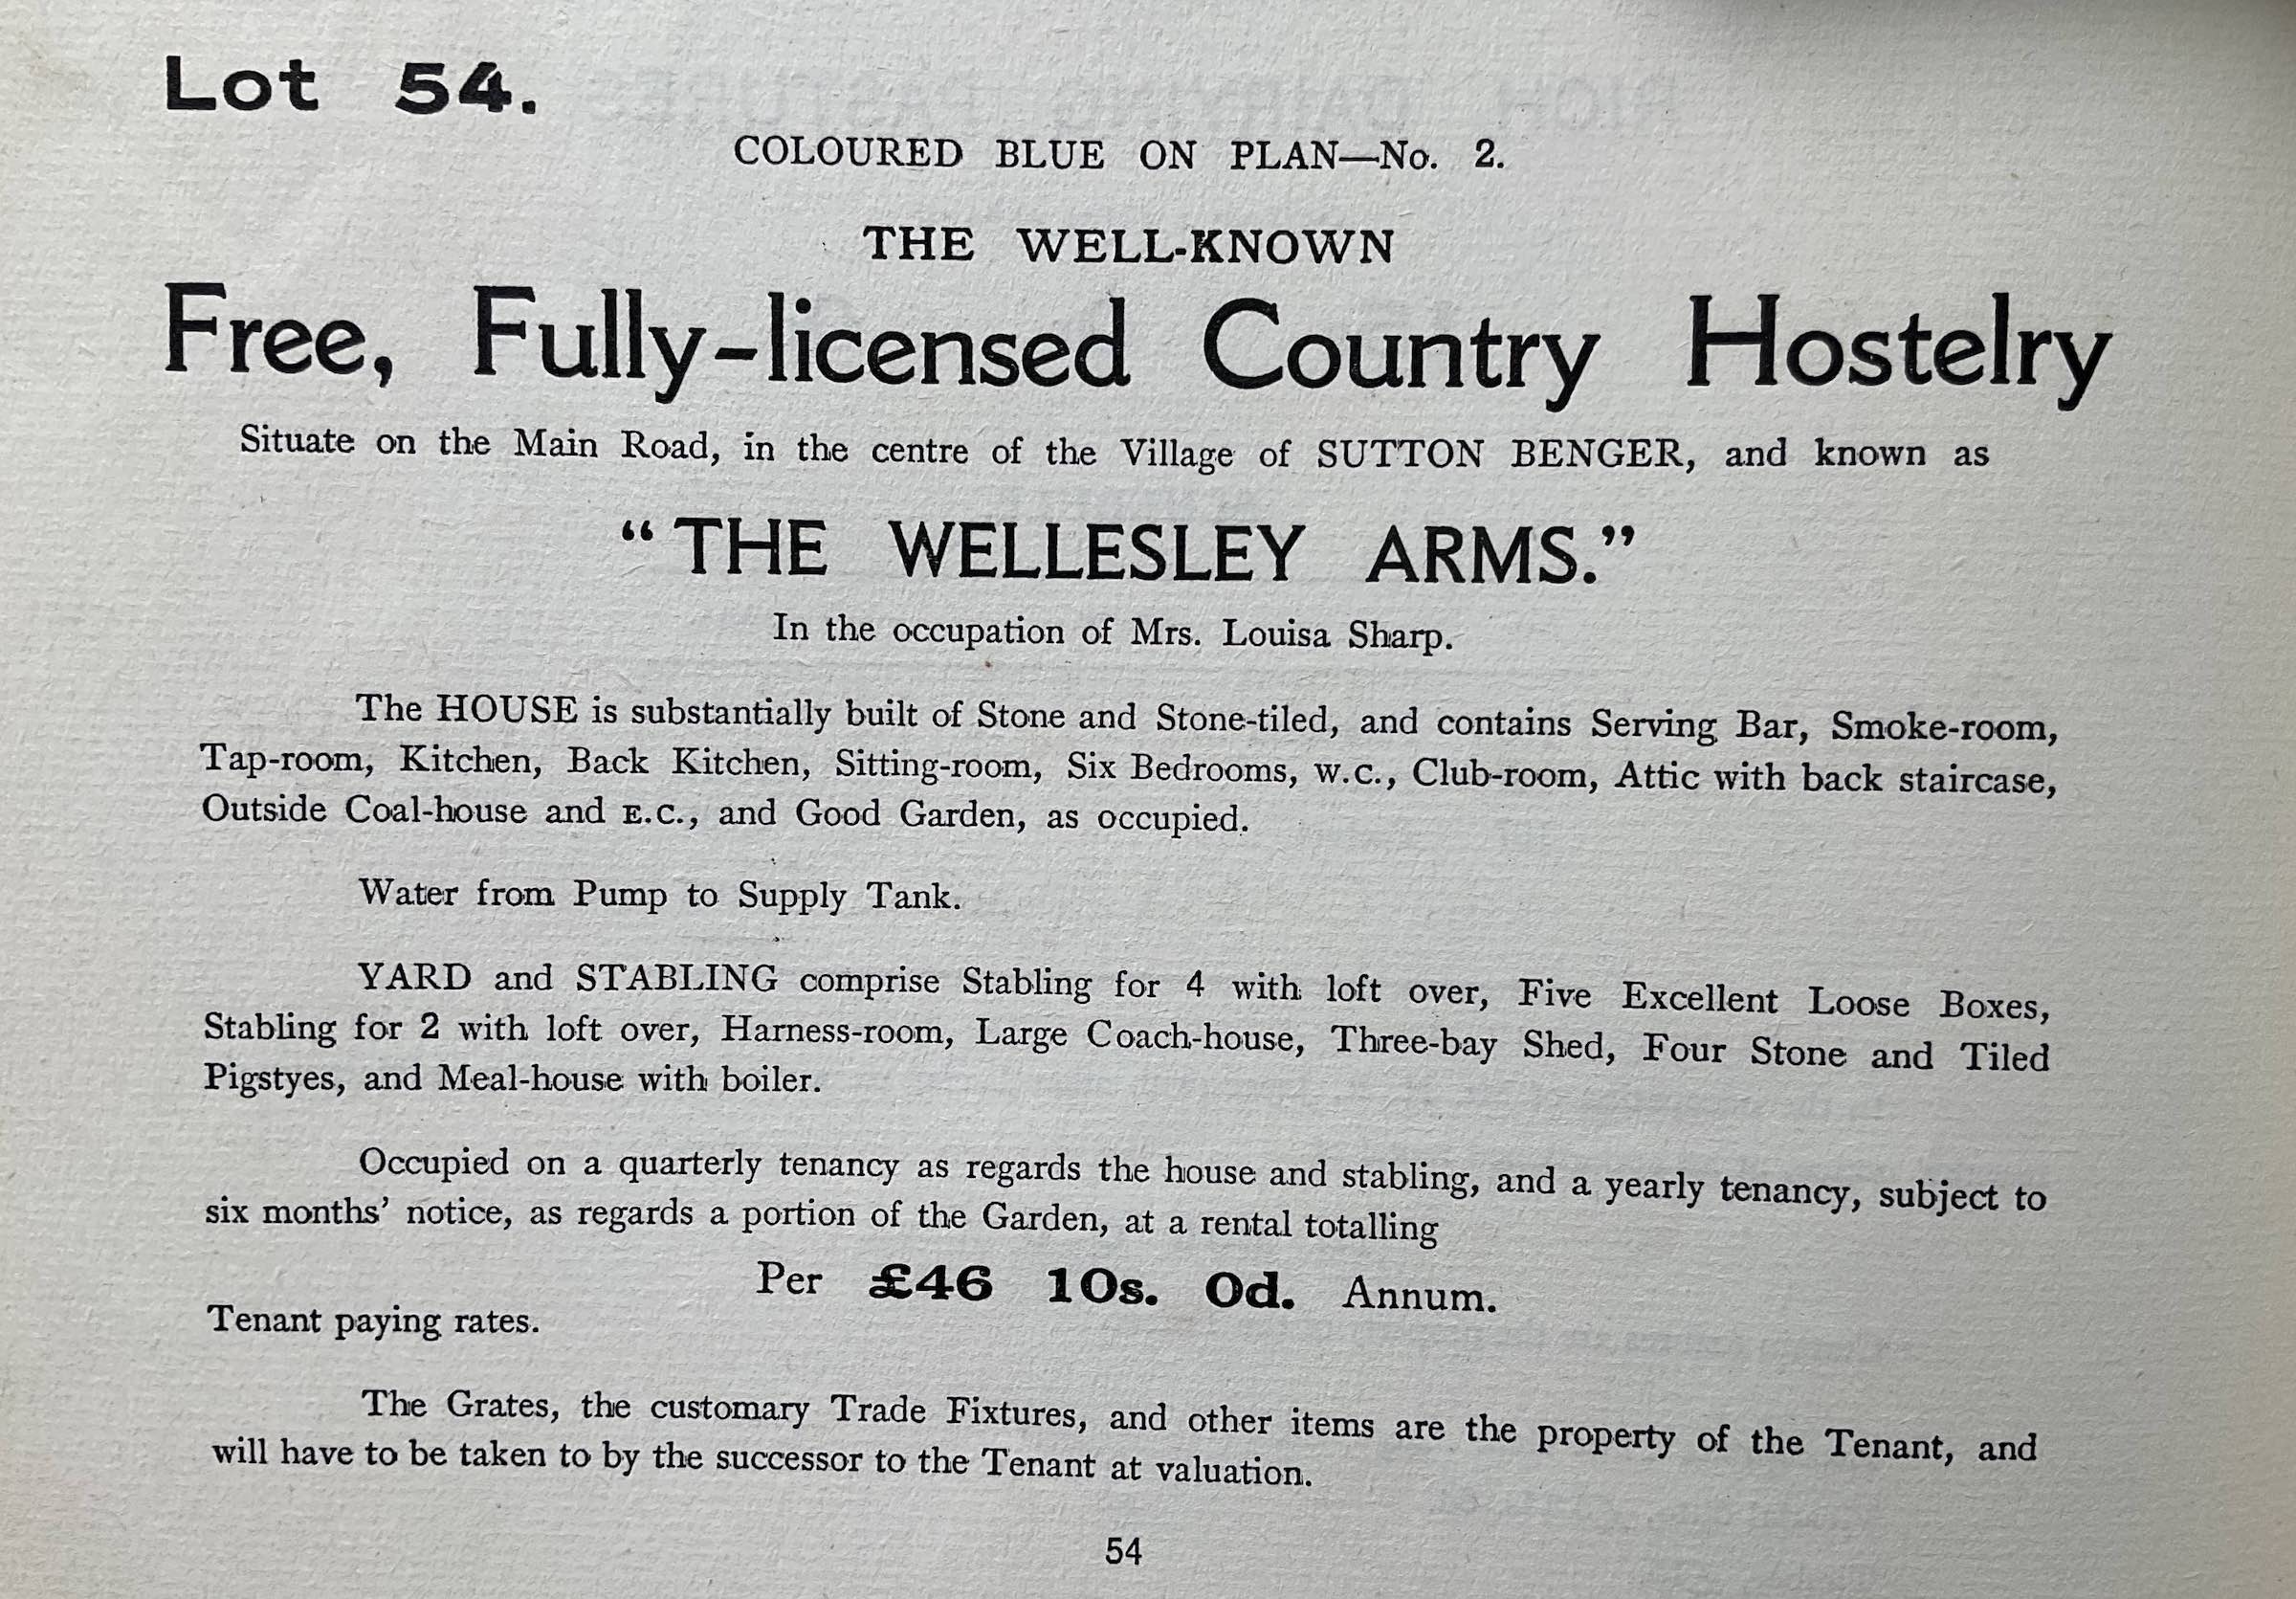 Wellesley Arms